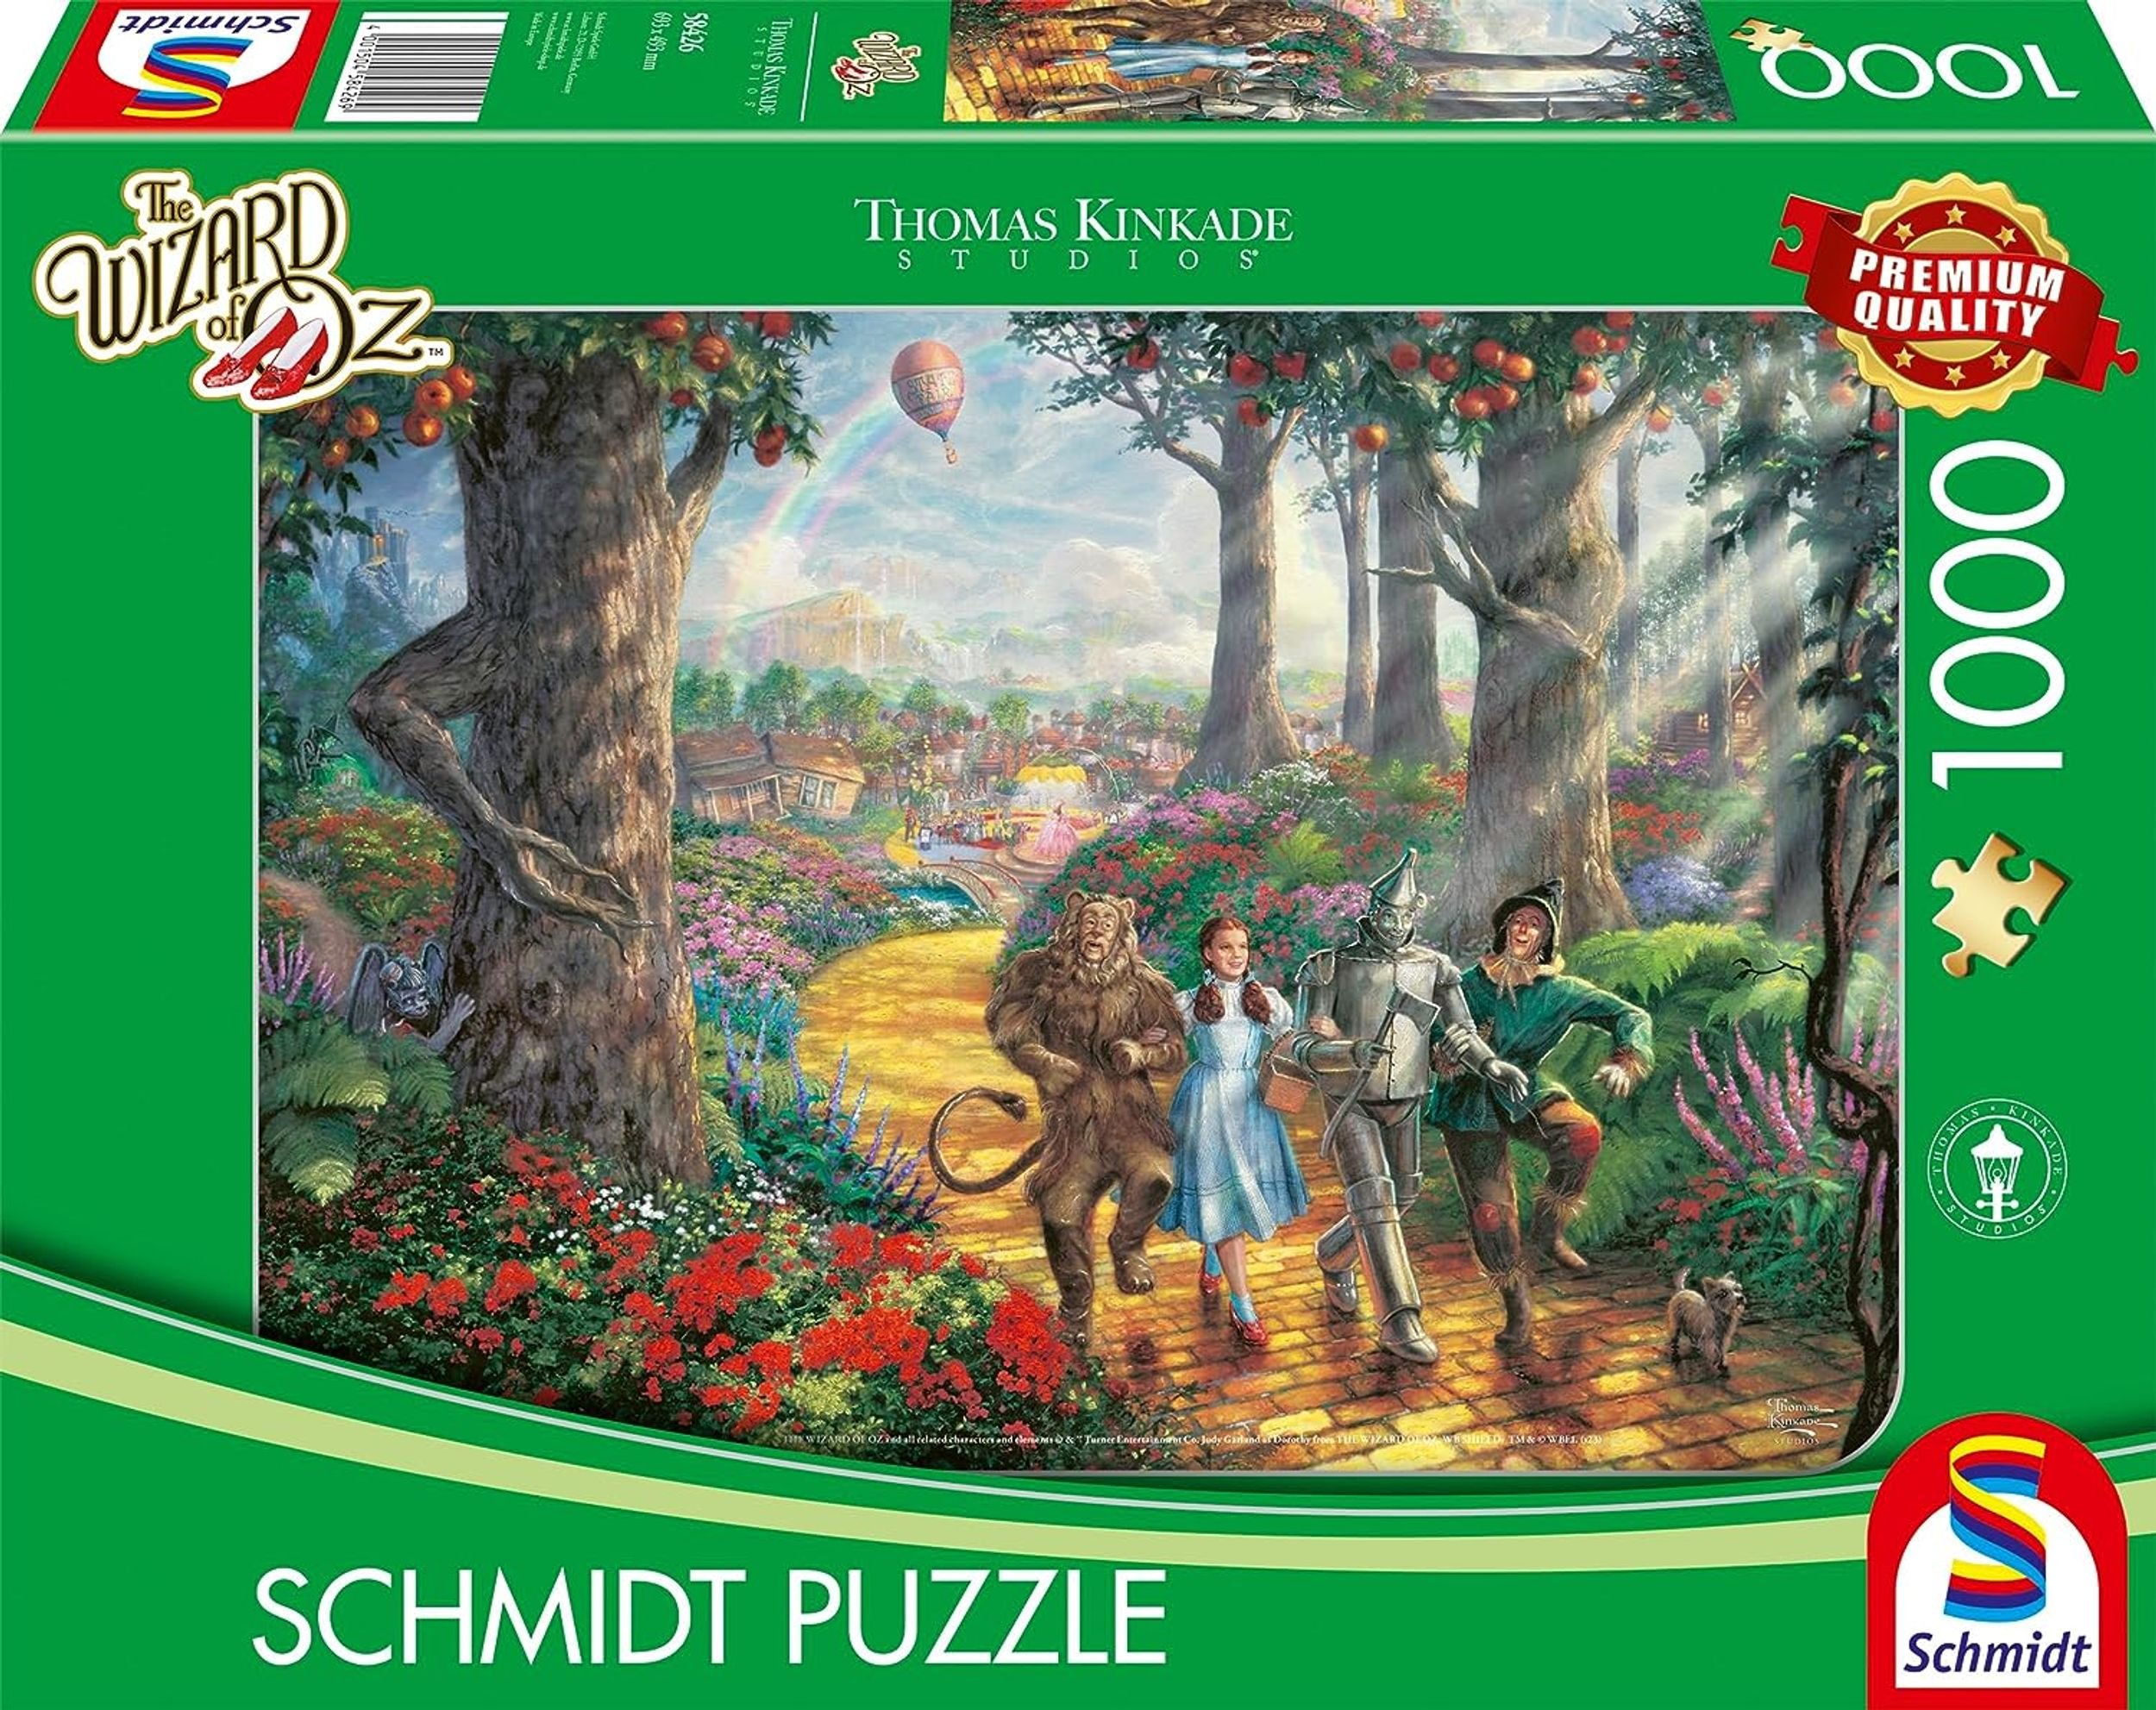 SCHMIDT SPIELE Der ROAD Follow Puzzle YELLOW the Zauberer Oz von BRICK